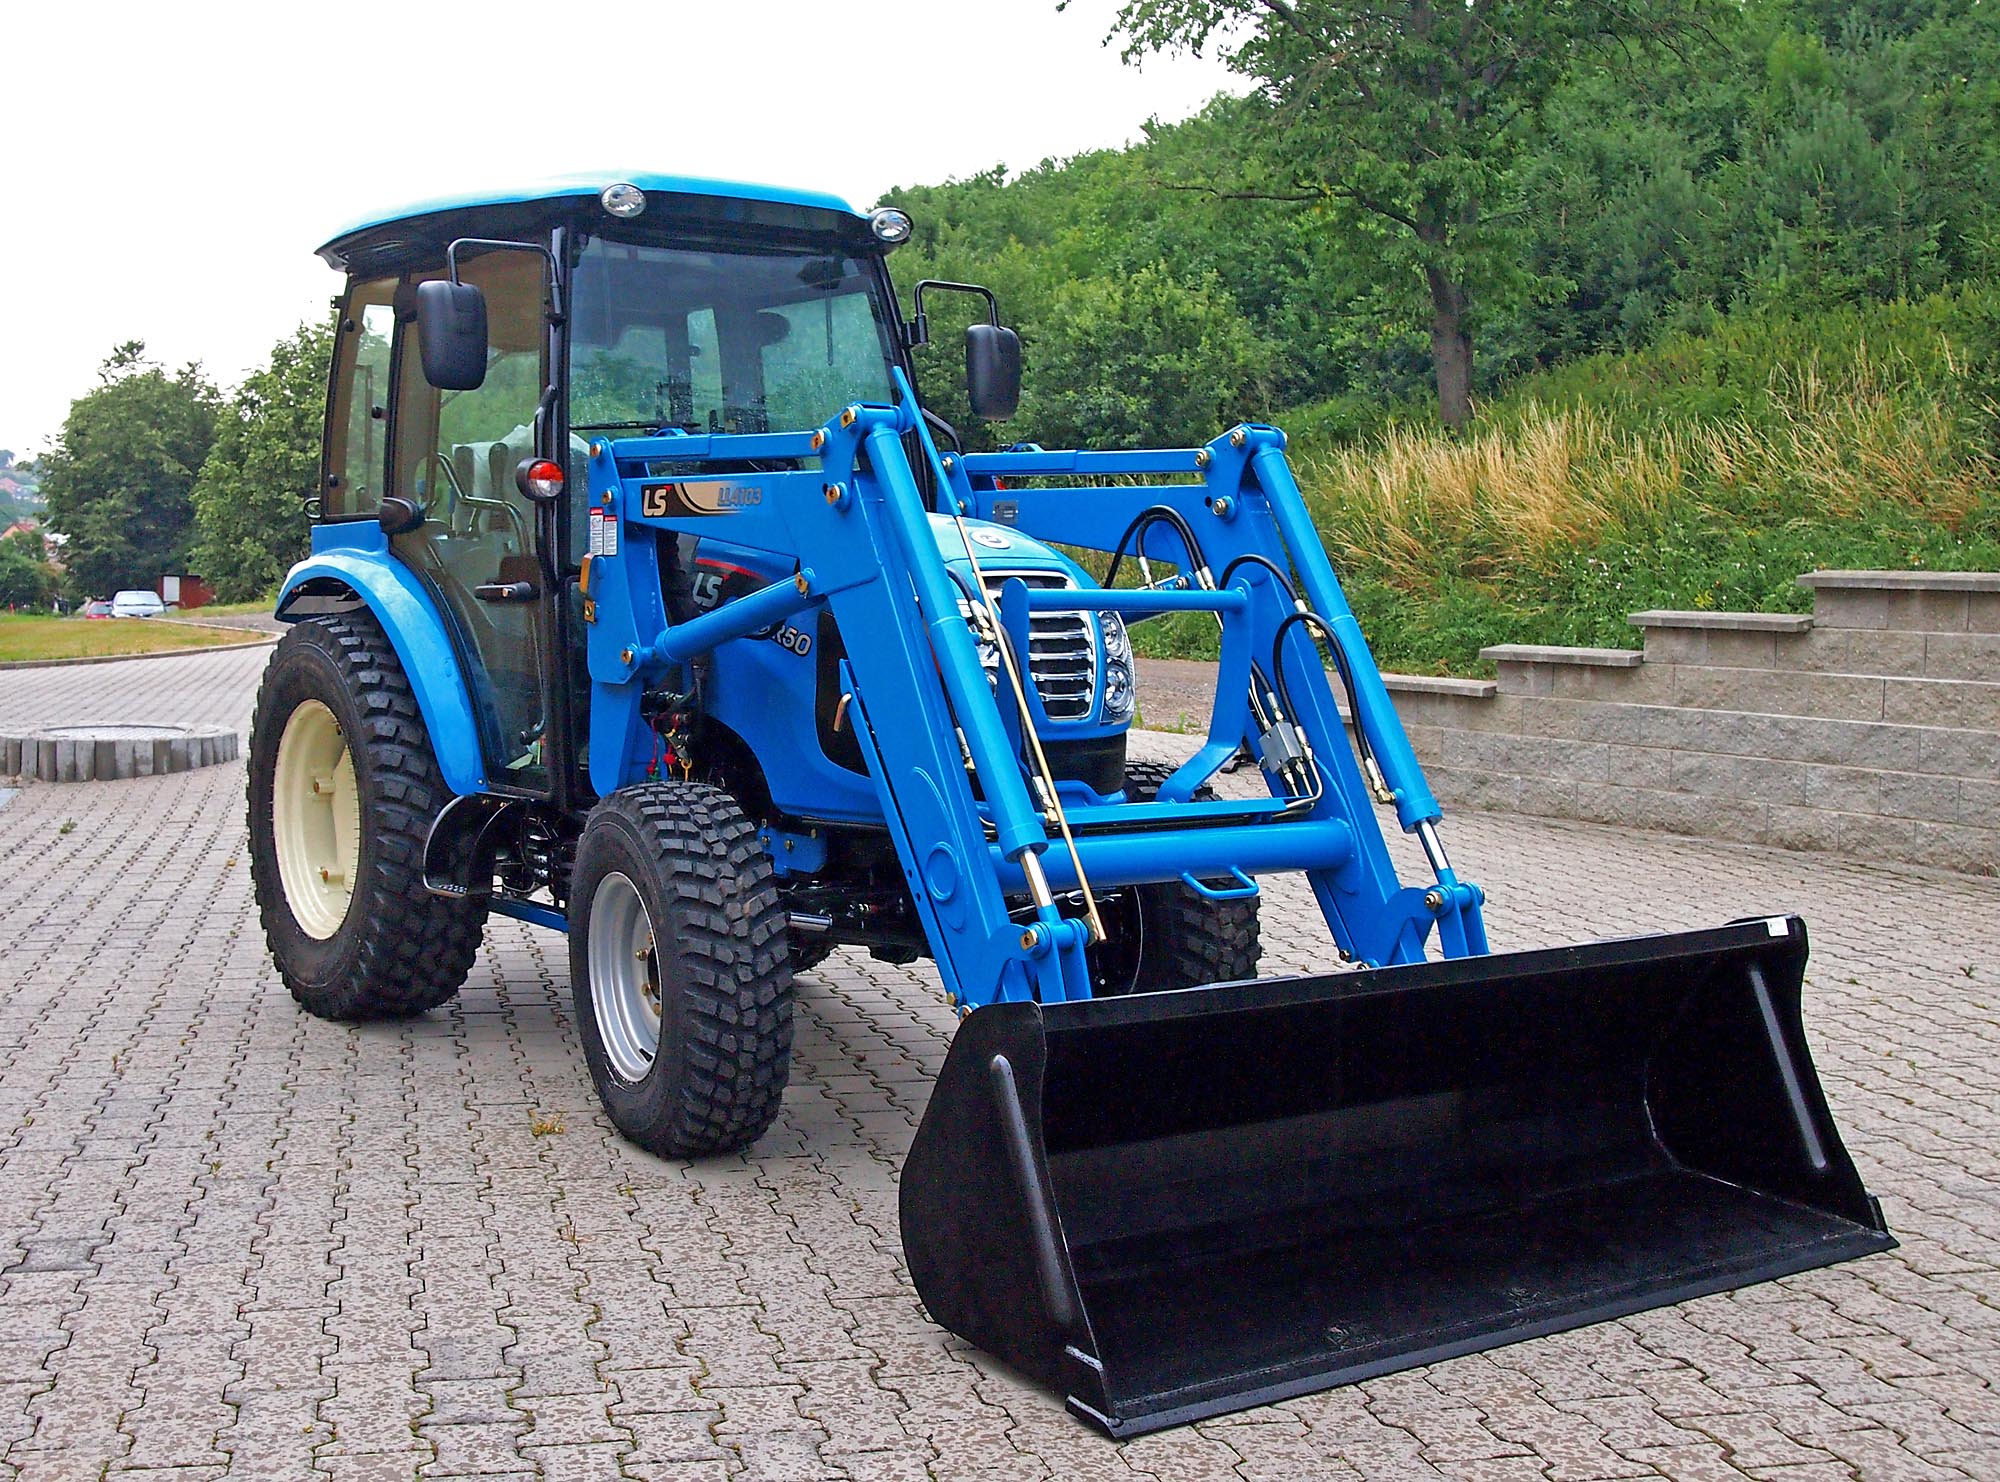 Komunální traktor LS model XR50 s čelním nakladačem.